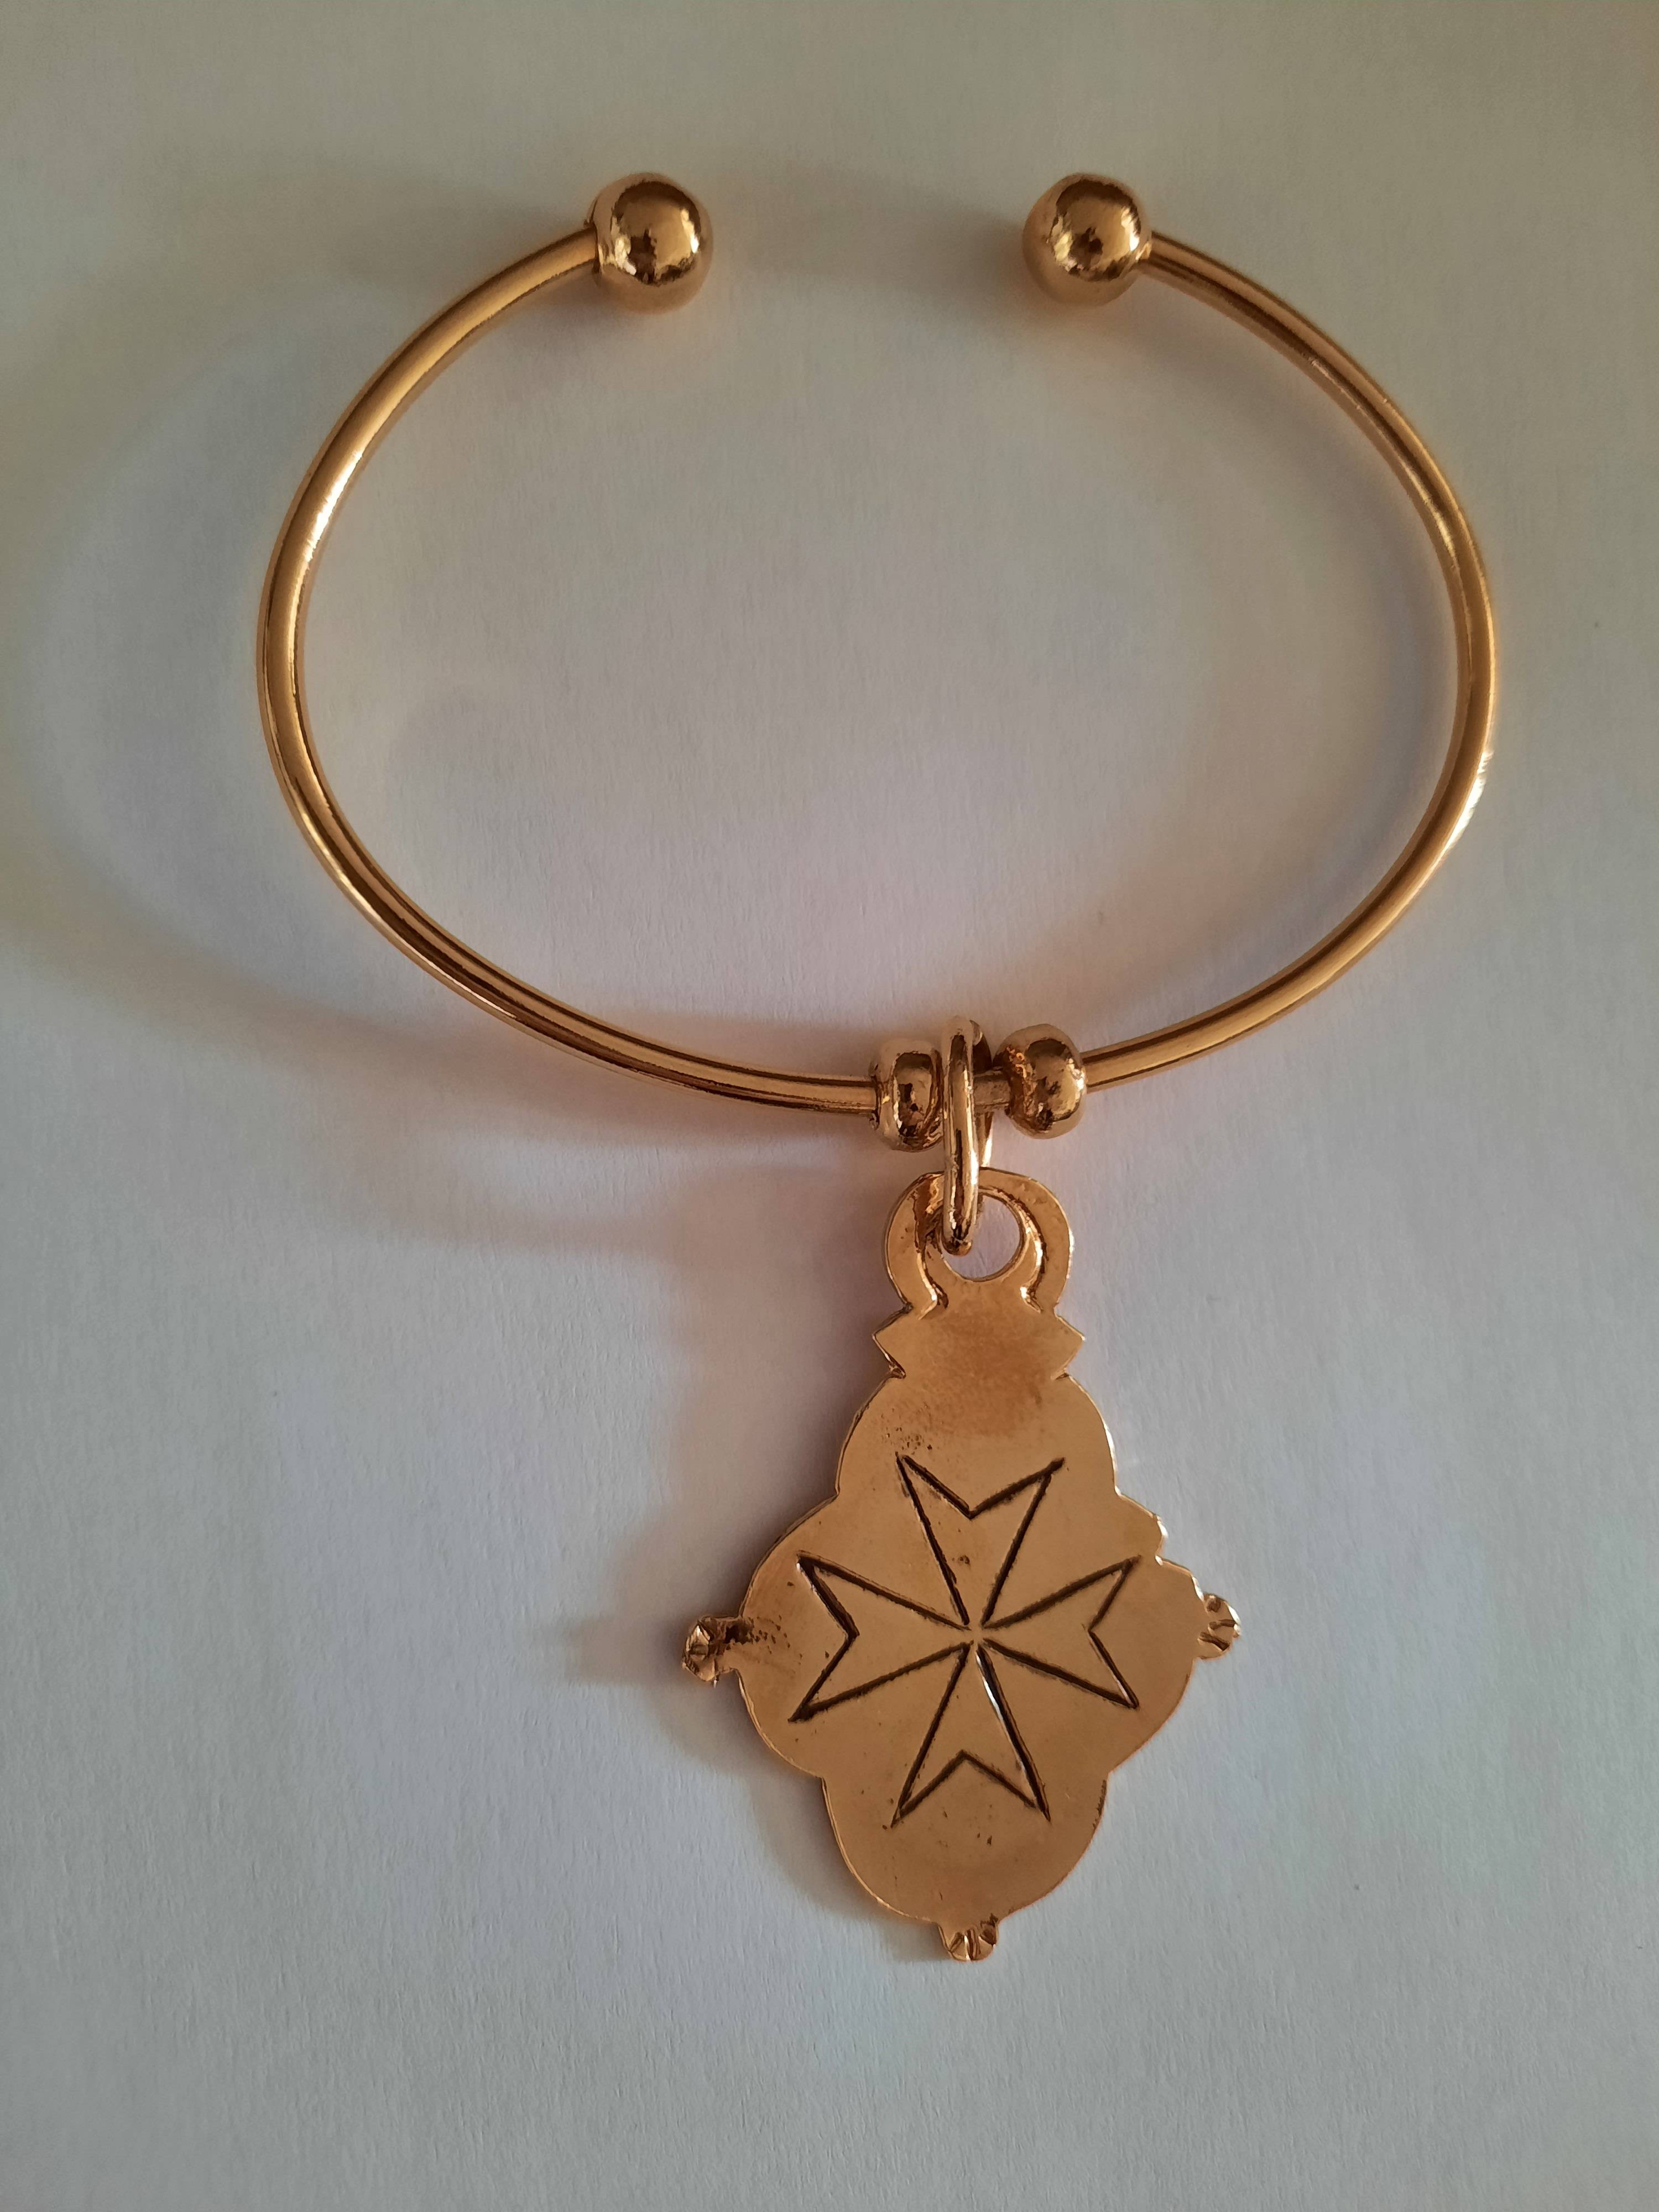 Bracelet Jonc coulas doré avec pendentif croix de Malte gravée doré